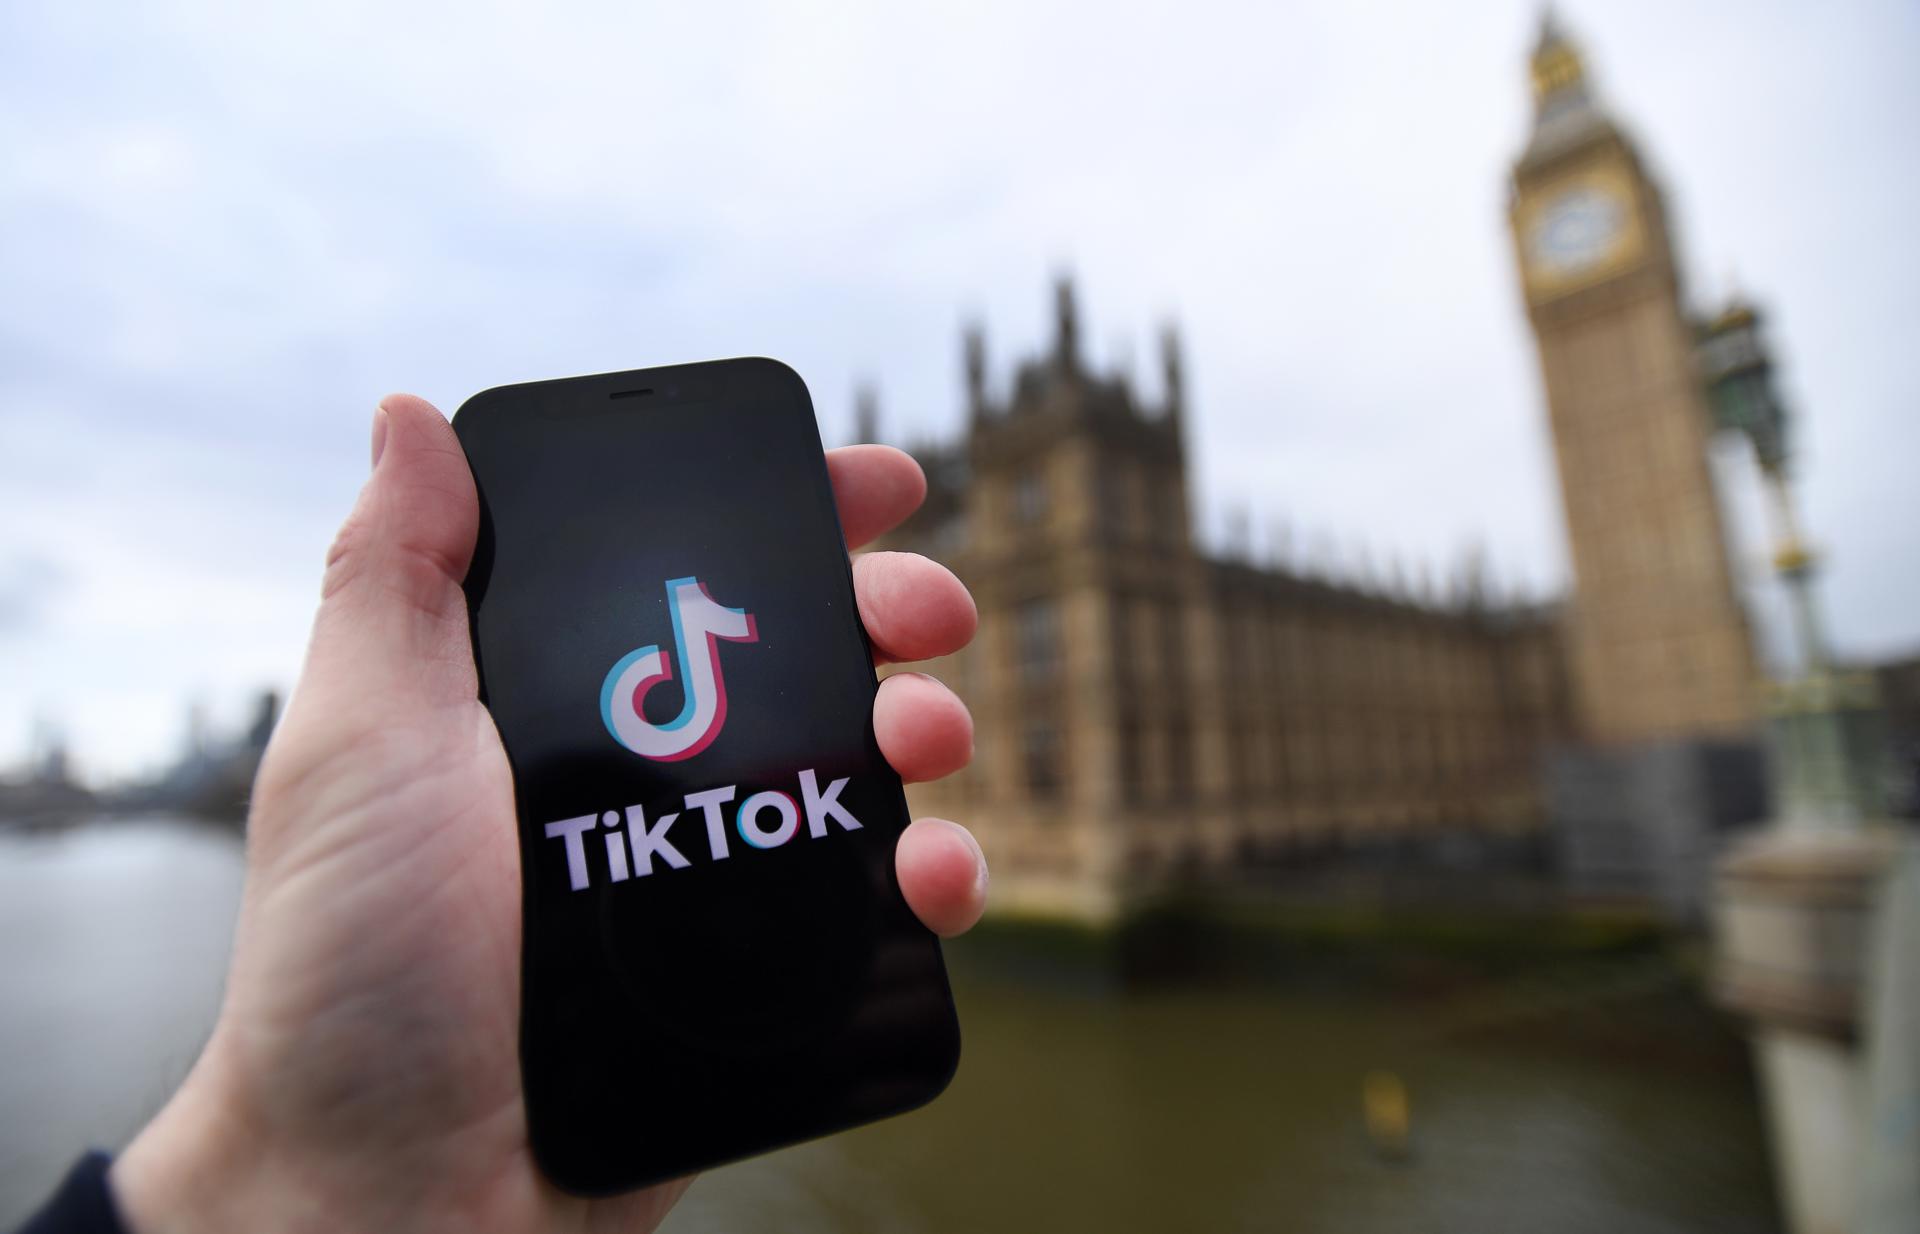 TikTok ve "decepcionante" el veto a su uso en móviles oficiales del Reino Unido